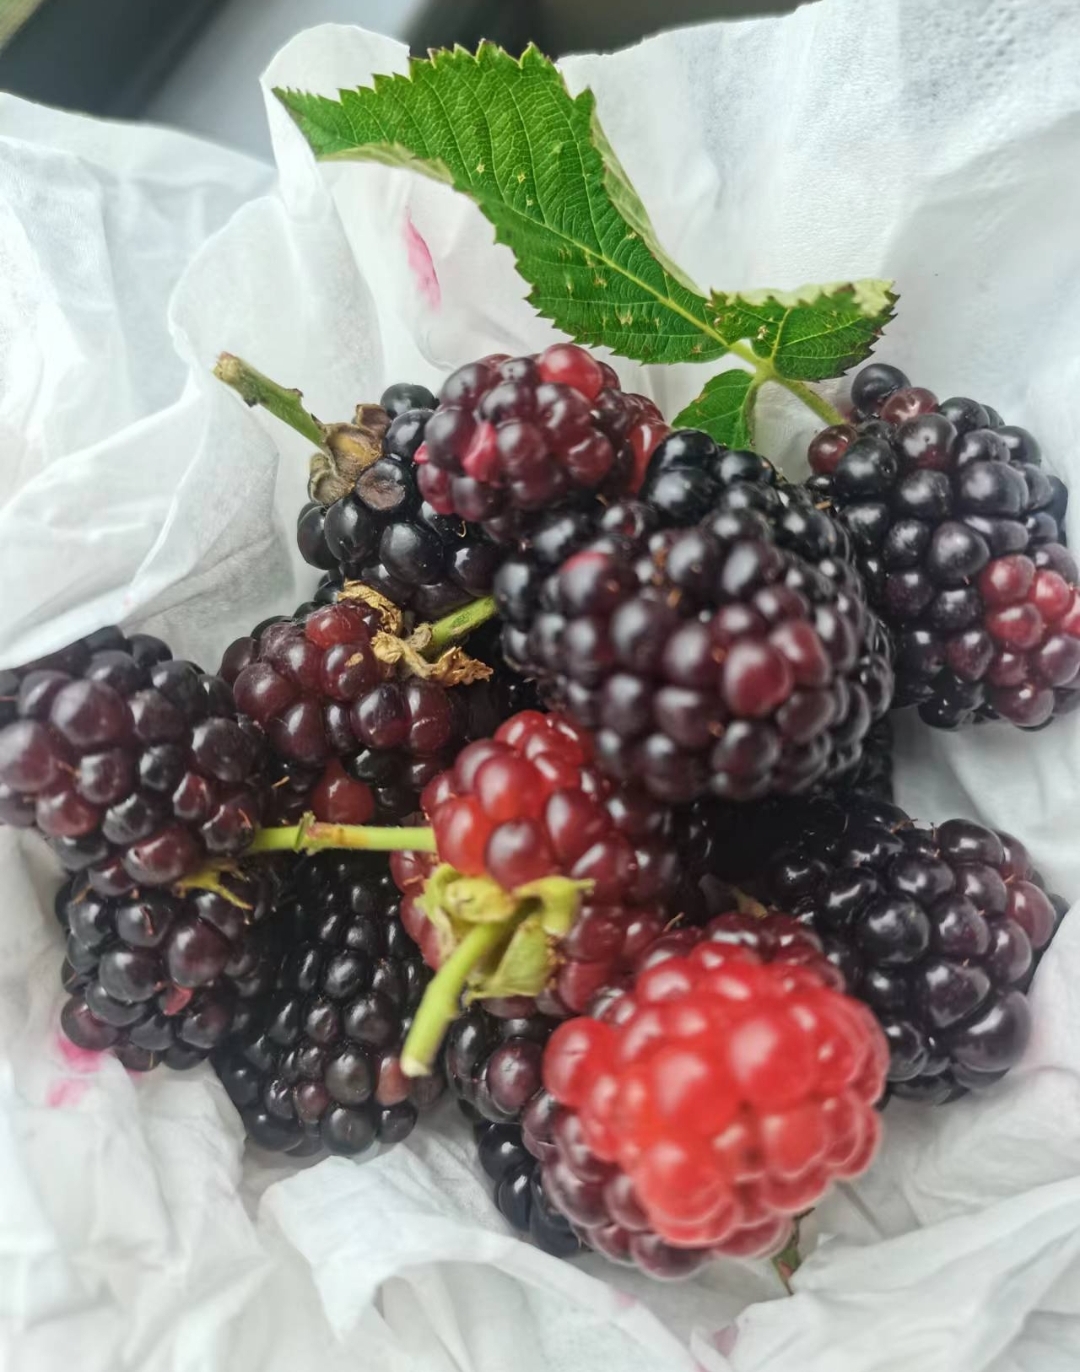 树莓,是什么,参观,了,一个,绿色,食品生产, . 树莓是什么?参观了一个树莓绿色食品生产企业